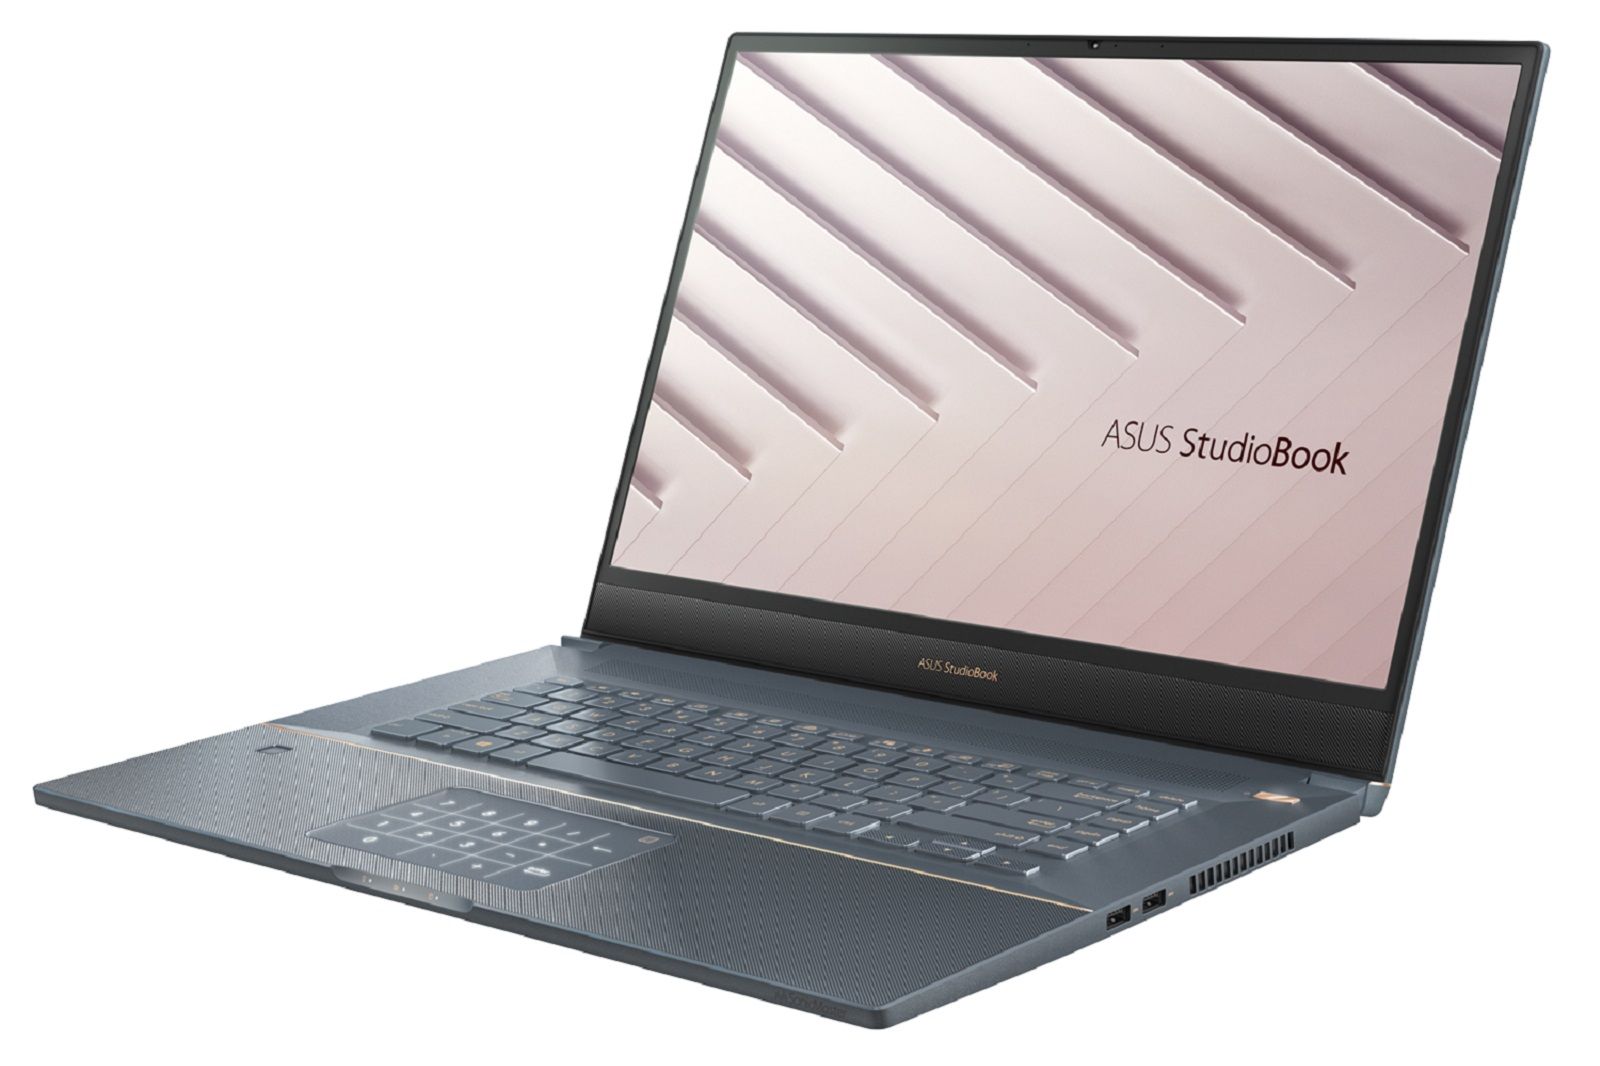 Asus StudioBook S W700 جدید وعده داده است که یک نیروگاه قدرتمند برای خلاقان تصویر 4 باشد